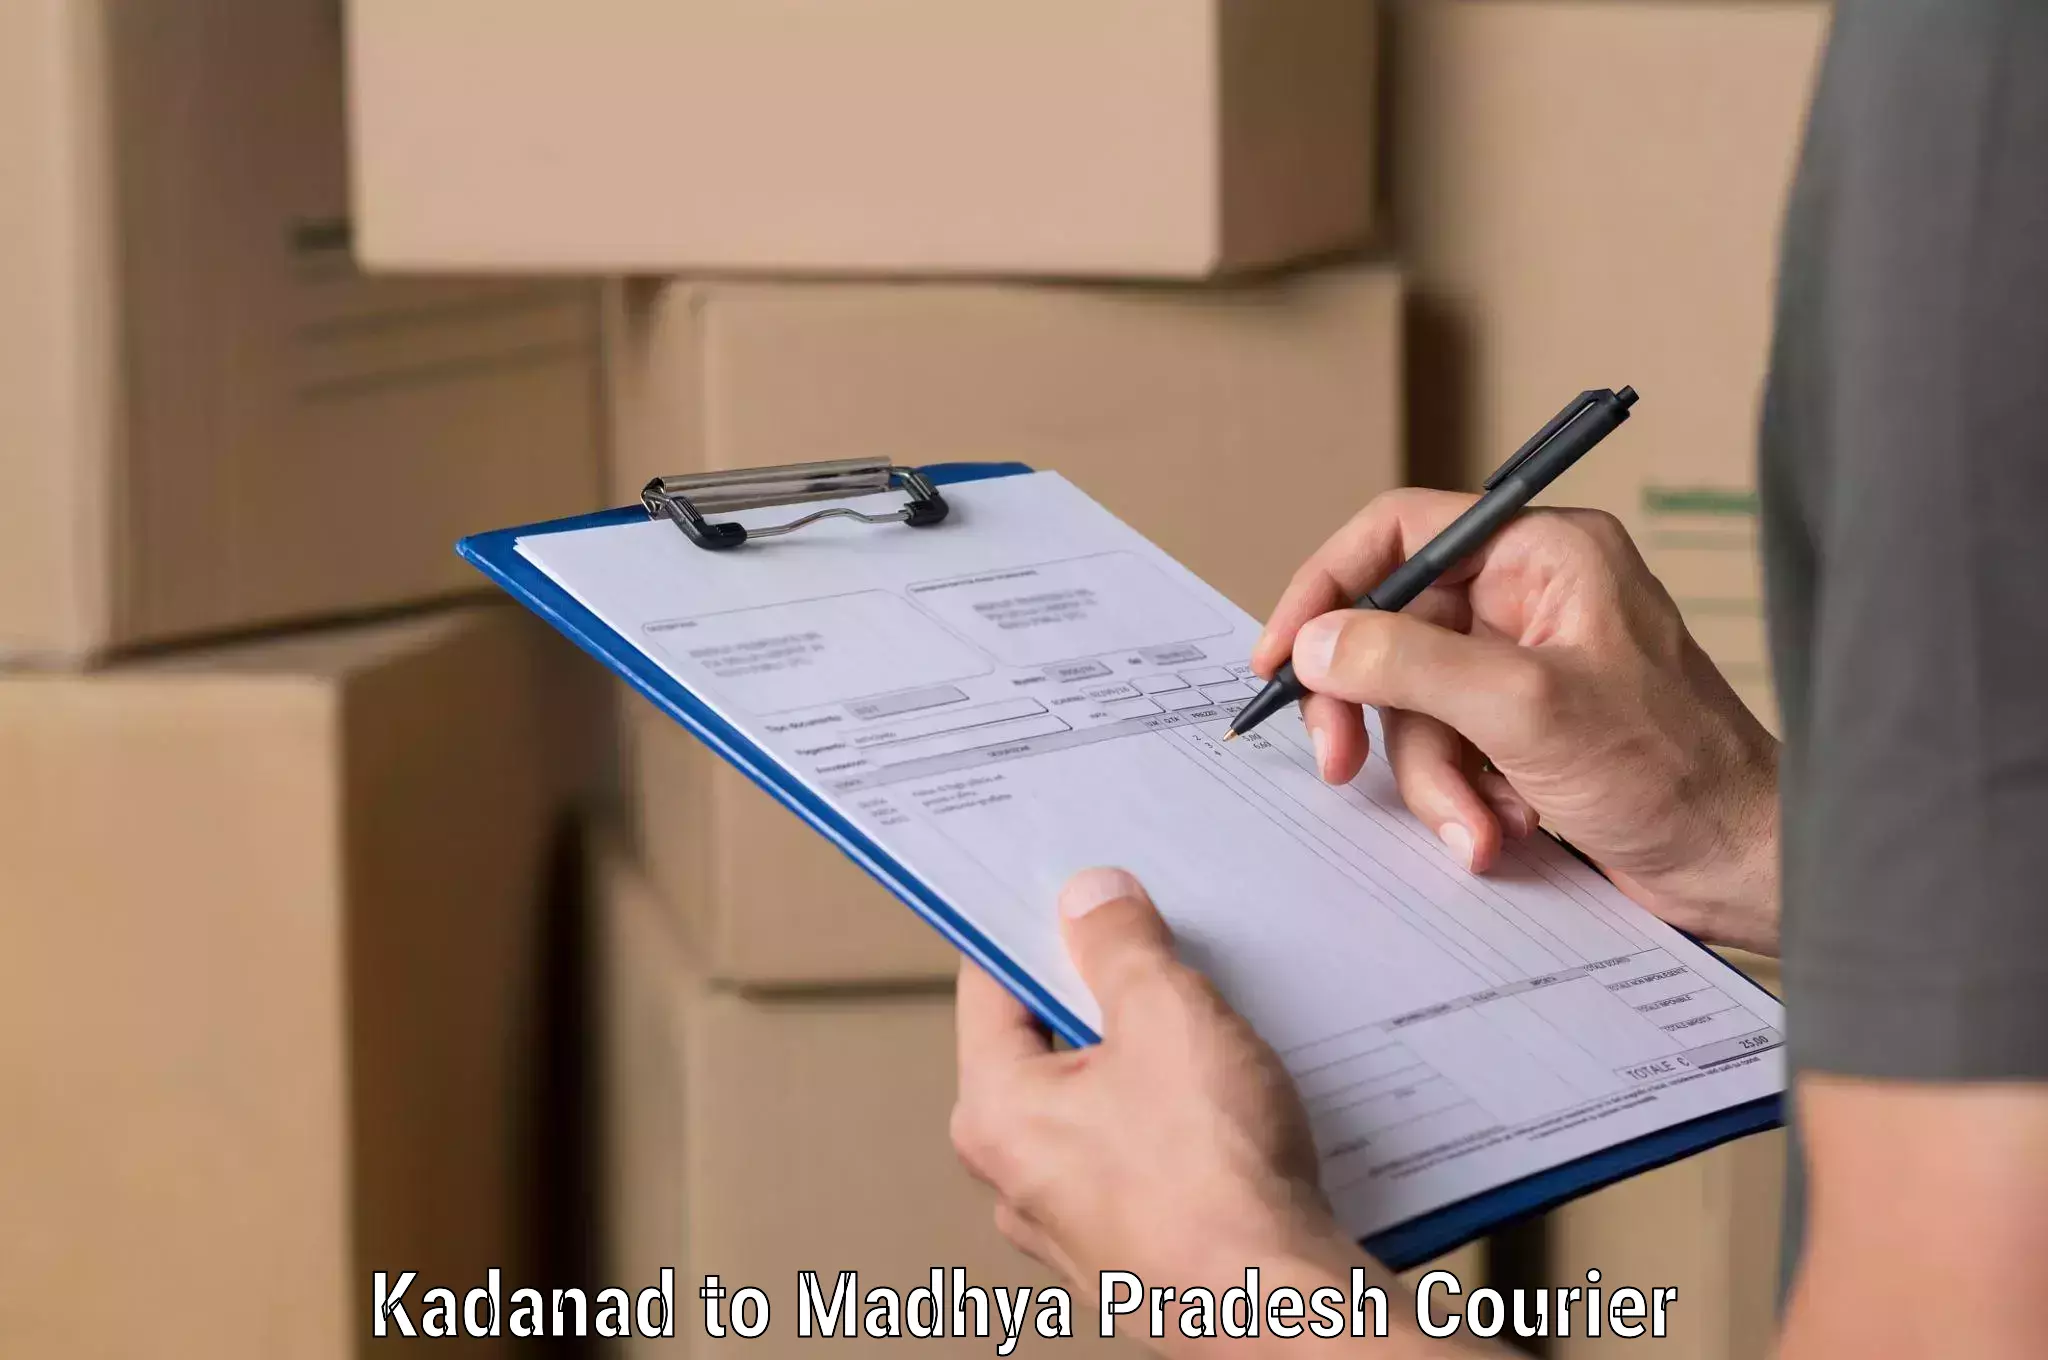 Courier service innovation Kadanad to Sohagi